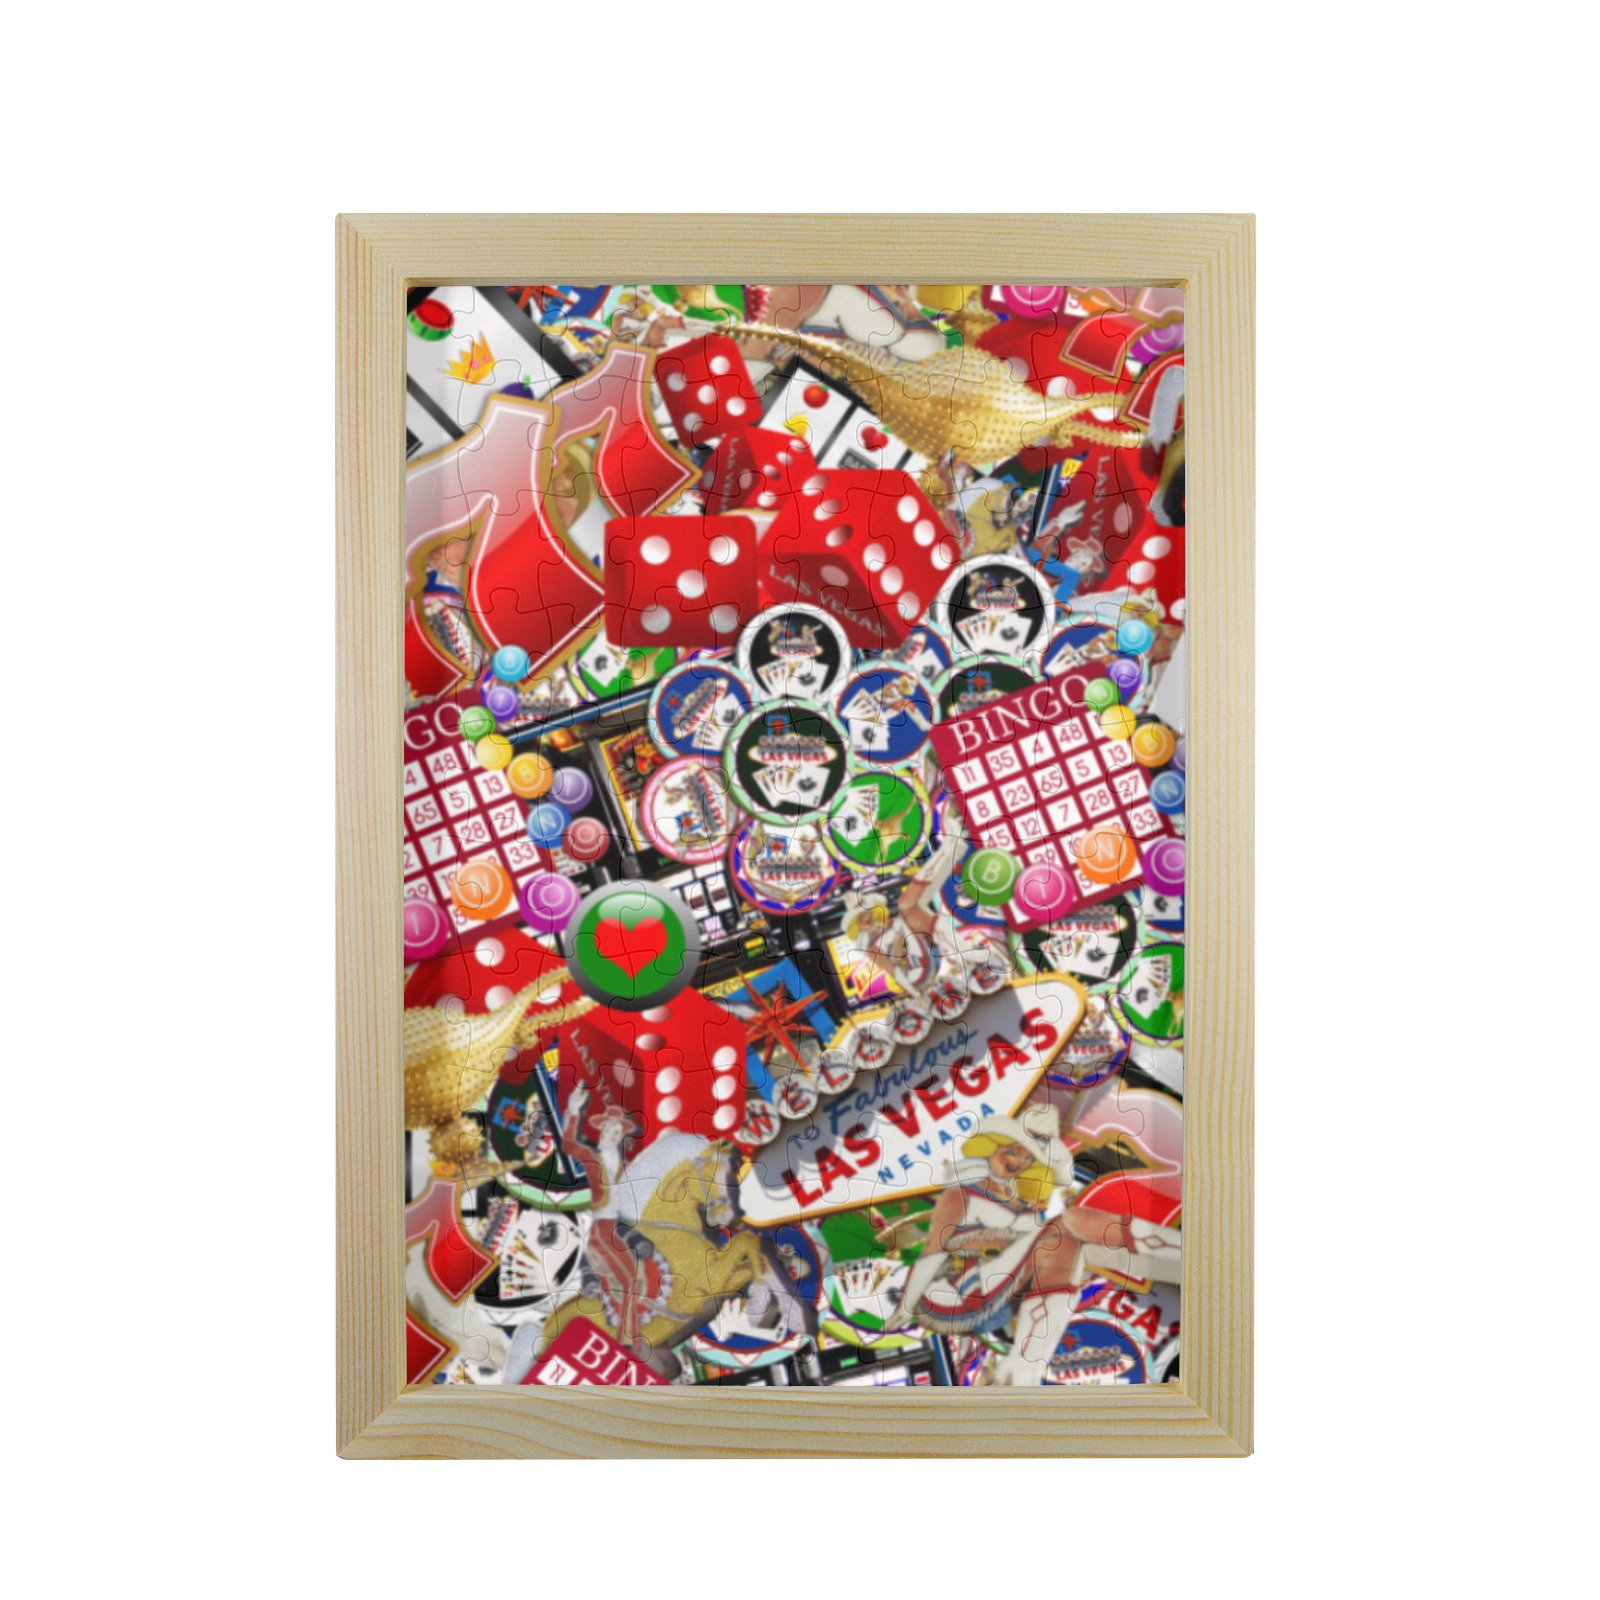 Gamblers Delight - Las Vegas Icons 100-Piece Puzzle Frame 9.5"x 12.5"